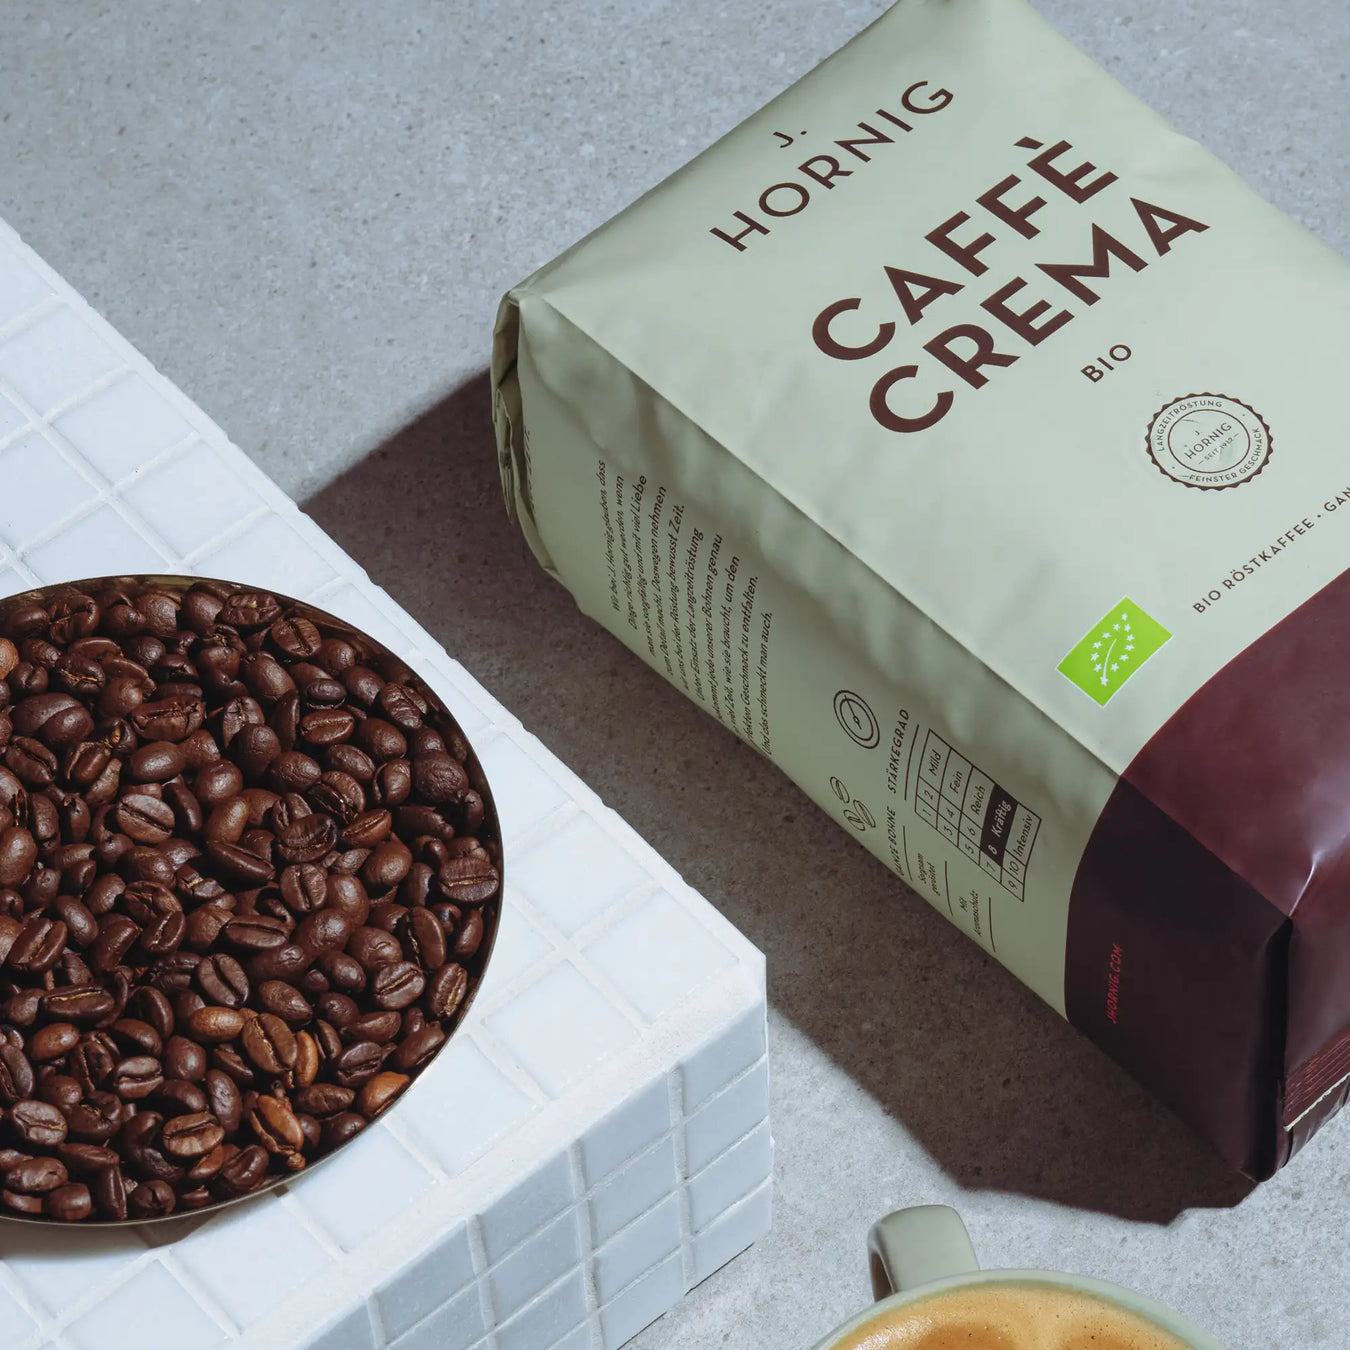 Eine Packung J. Hornig Caffe Crema Bio Kaffee liegend mit einer Schale Kaffeebohnen